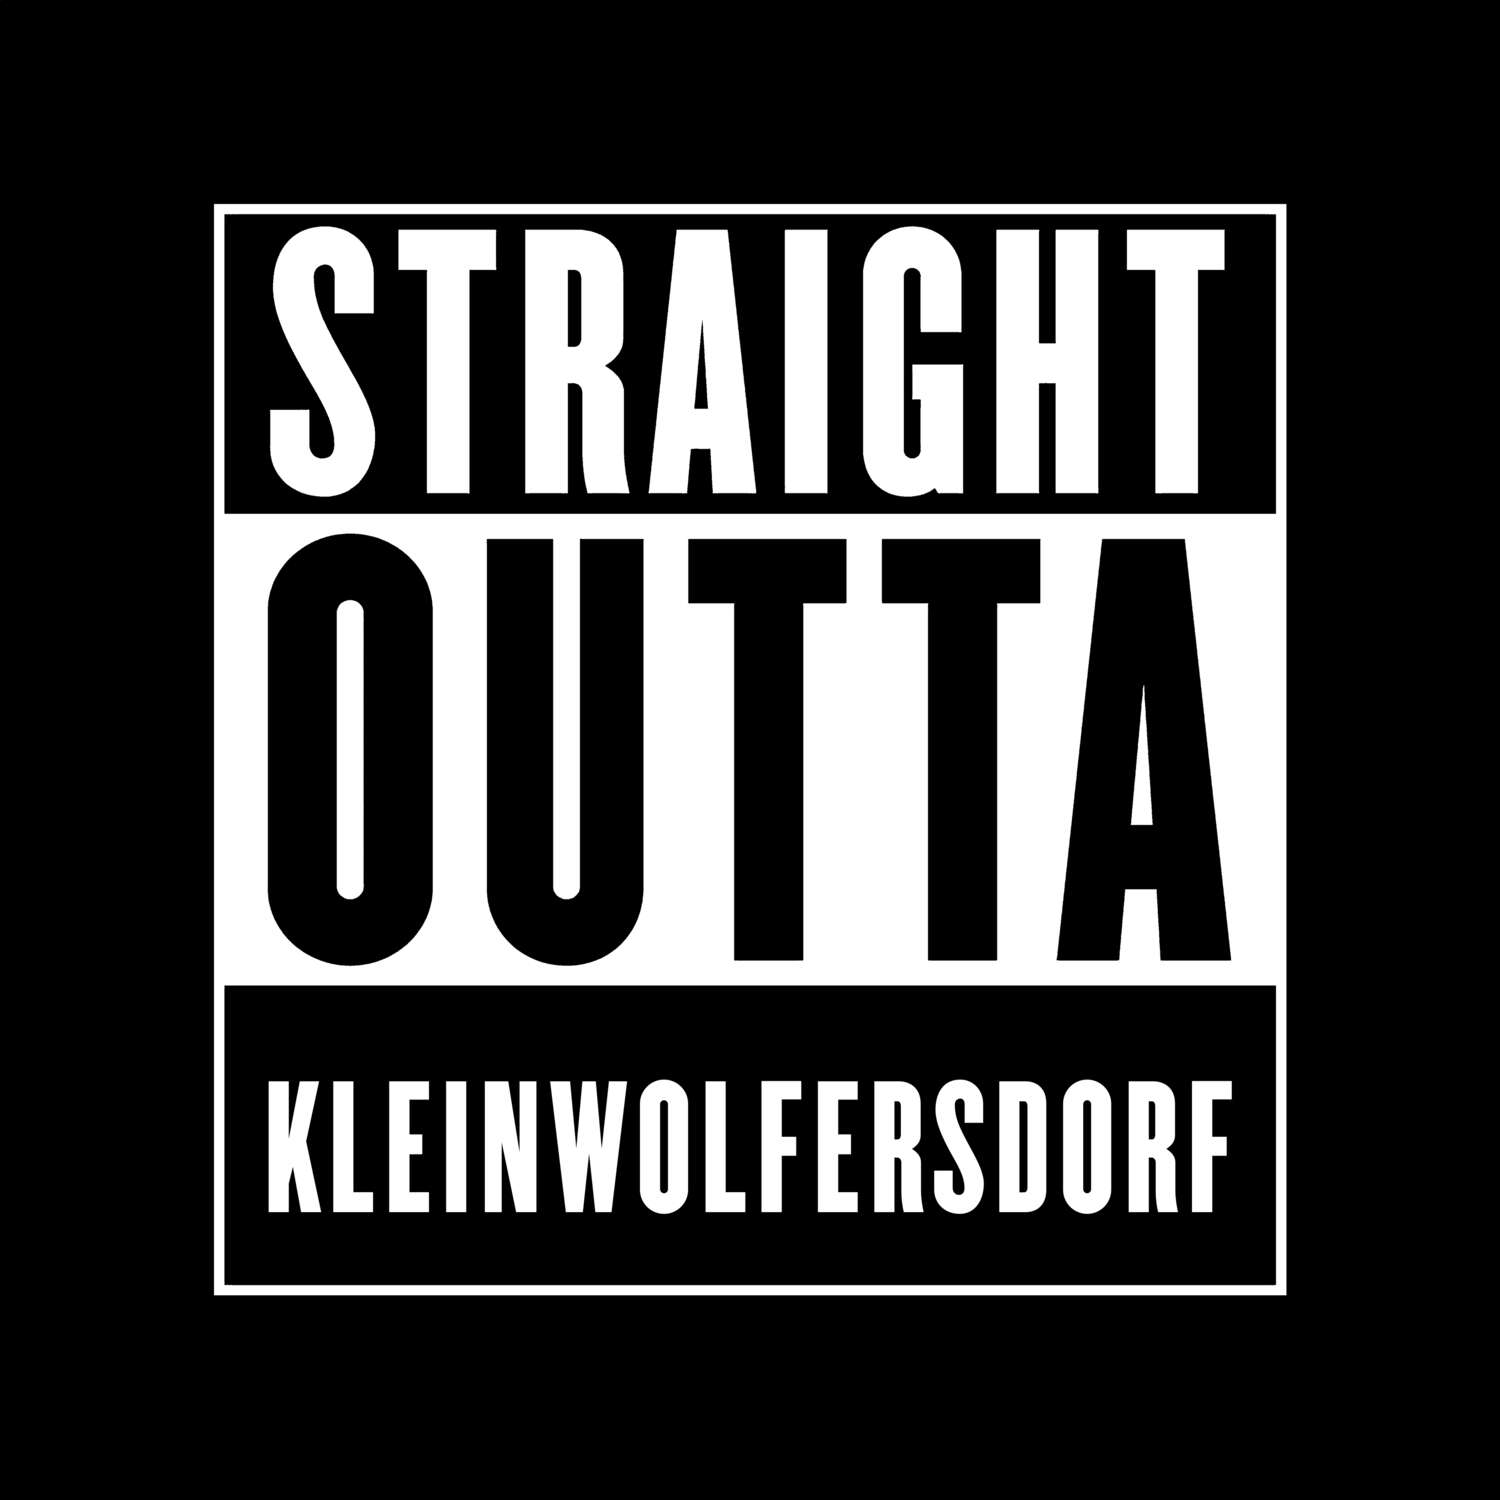 Kleinwolfersdorf T-Shirt »Straight Outta«